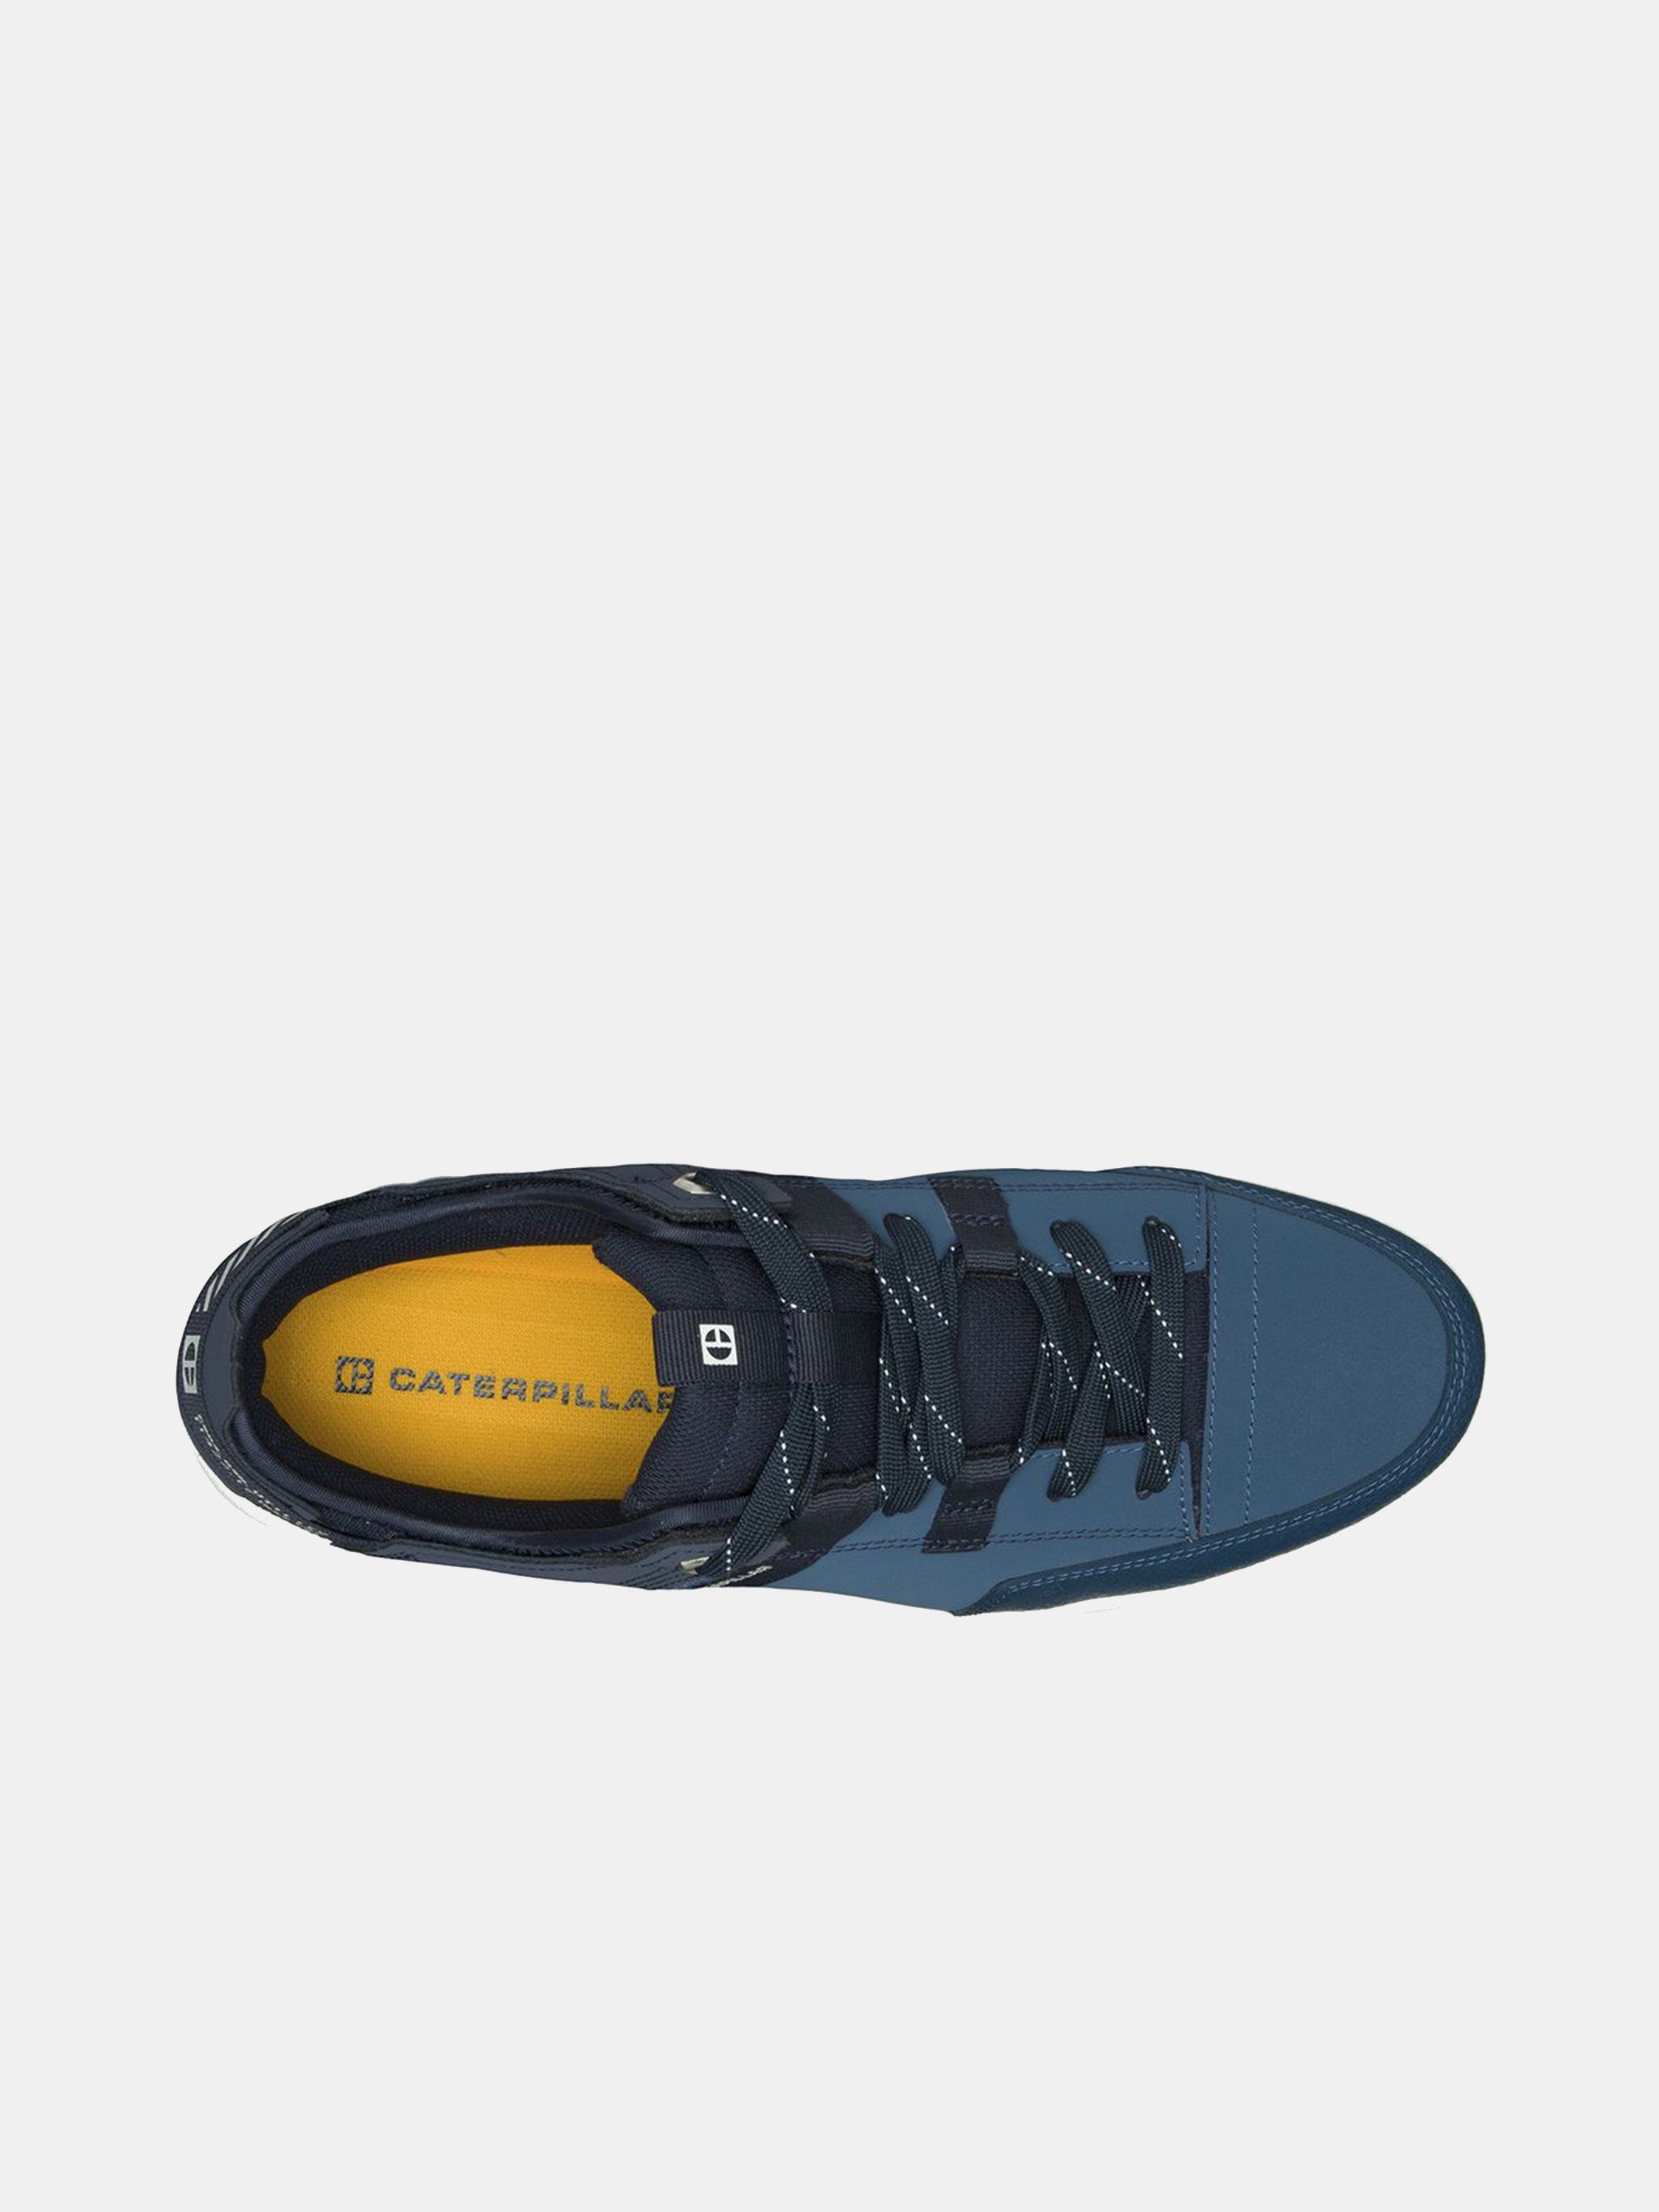 Caterpillar Men's Hex Tough Shoes #color_Blue